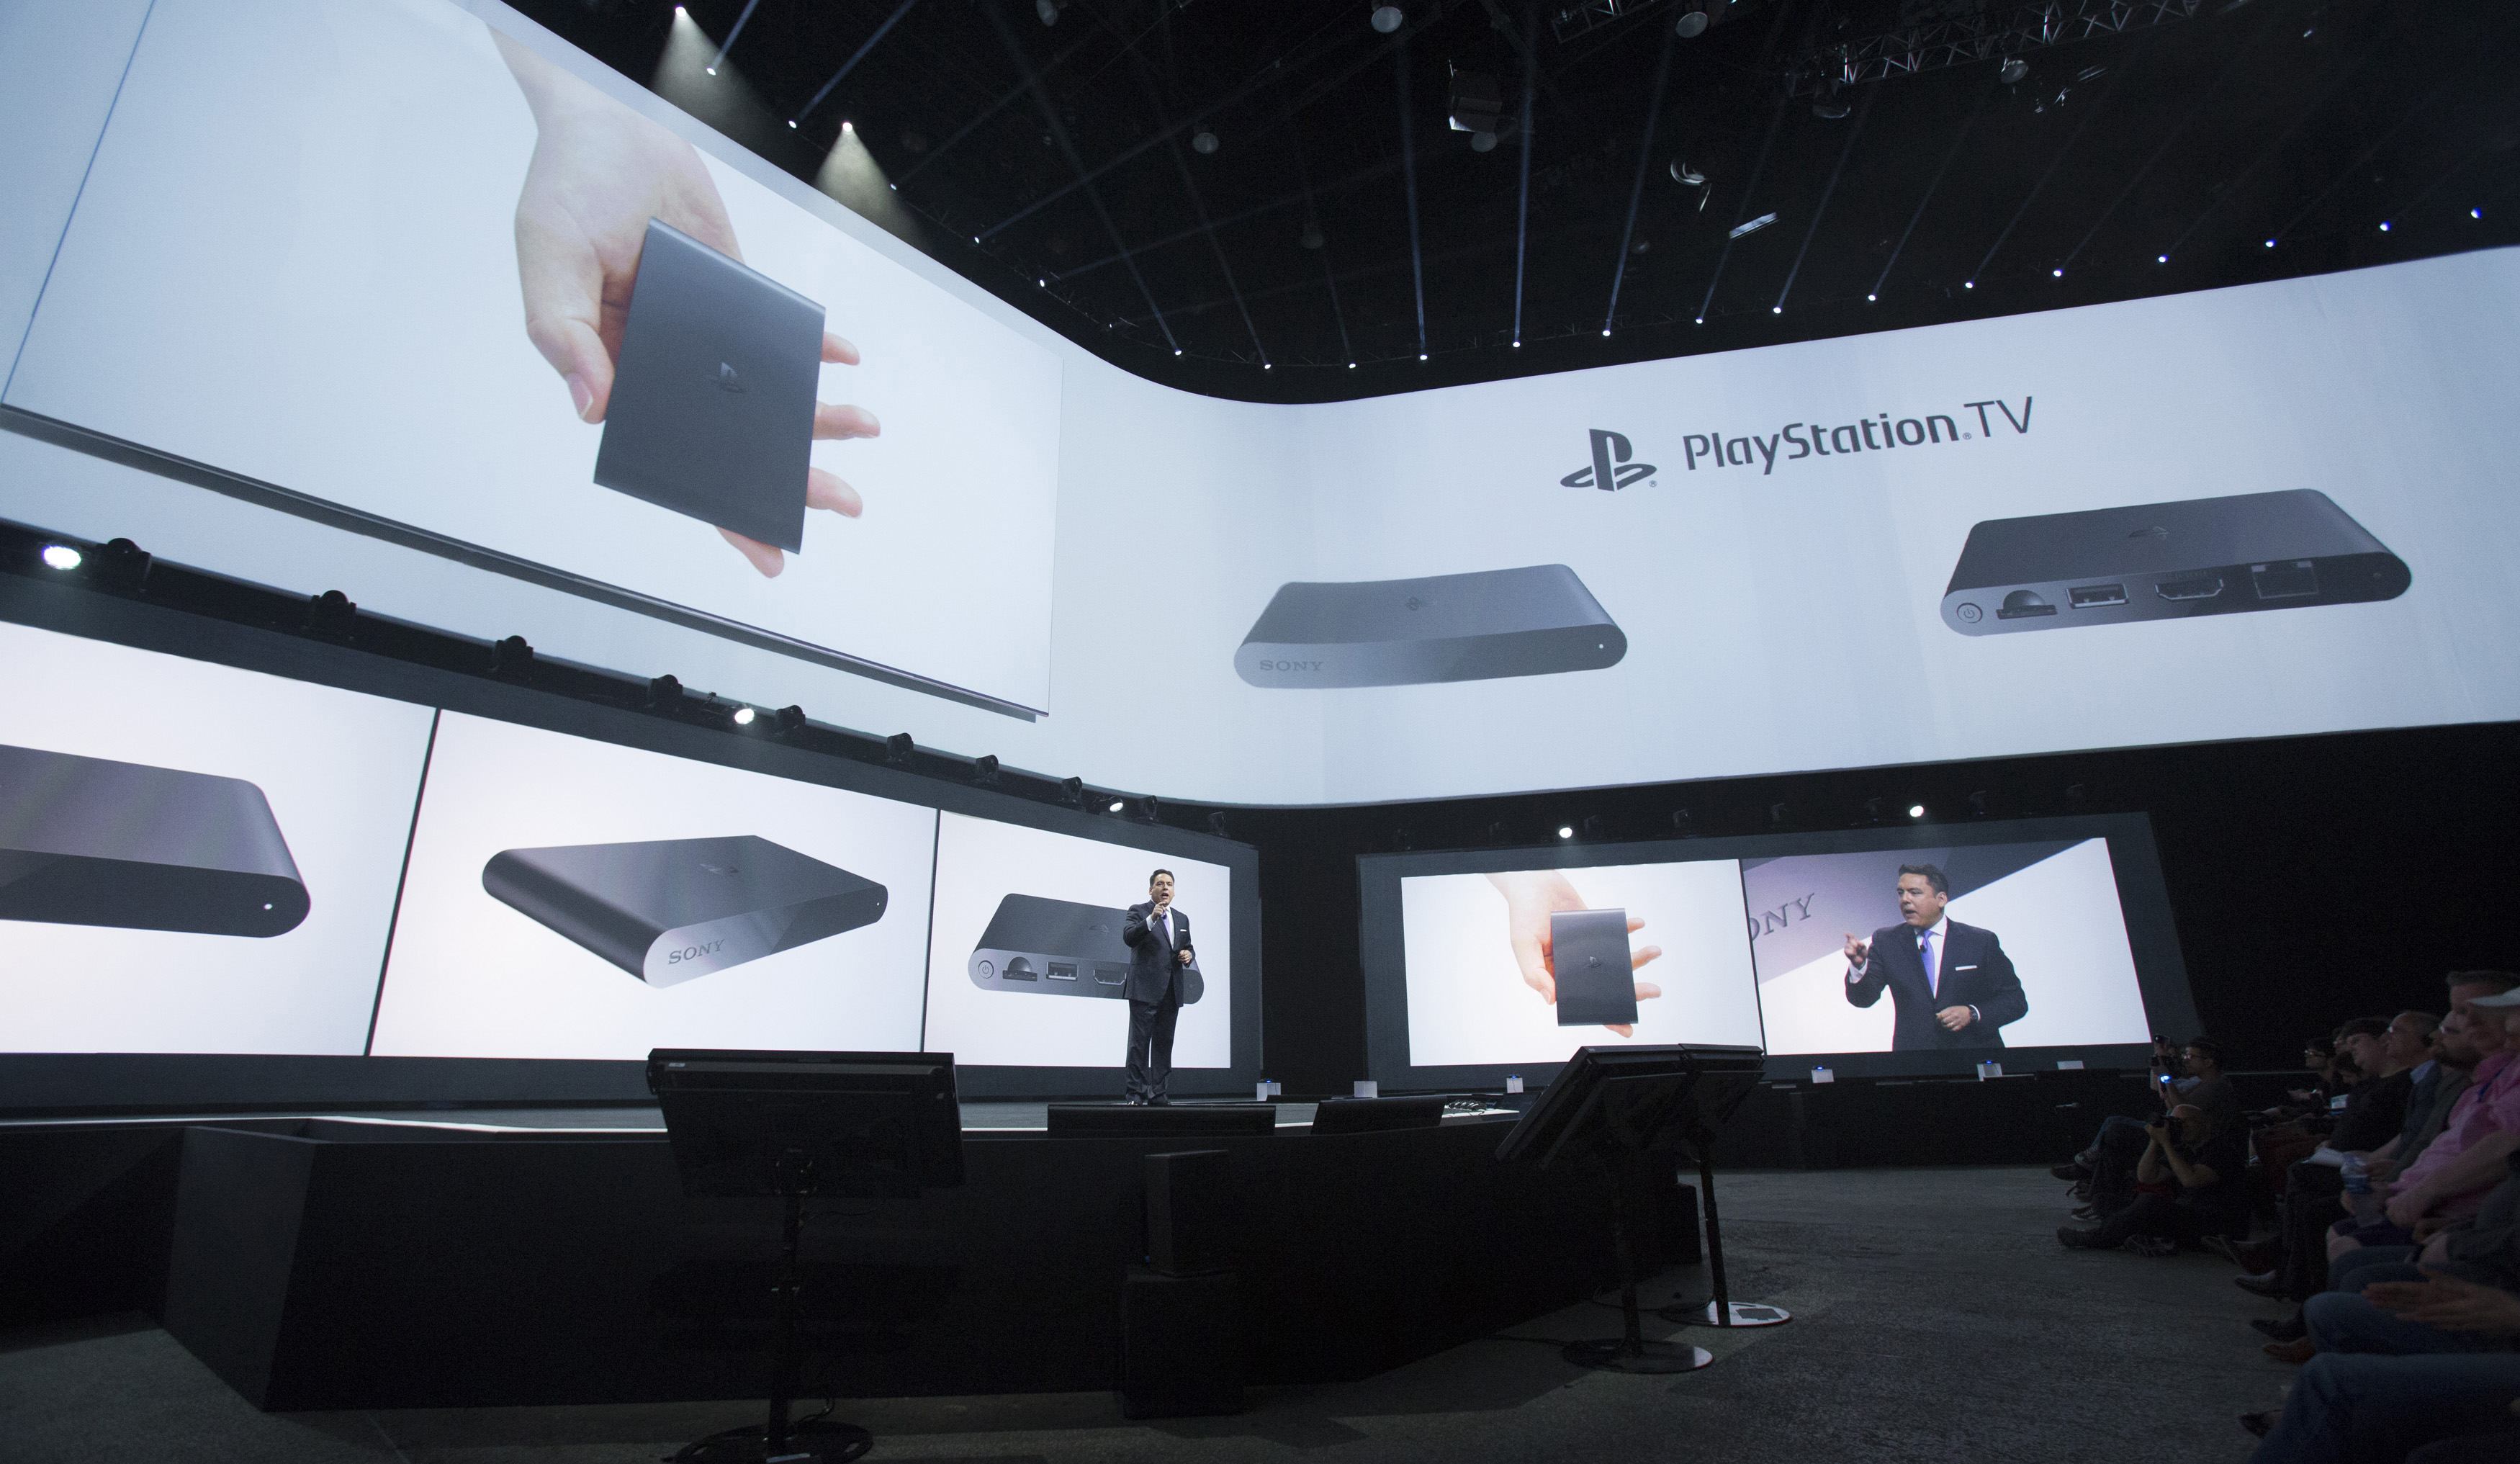 Sony lanzará su PlayStation TV en EEUU y Europa a fines de 2014